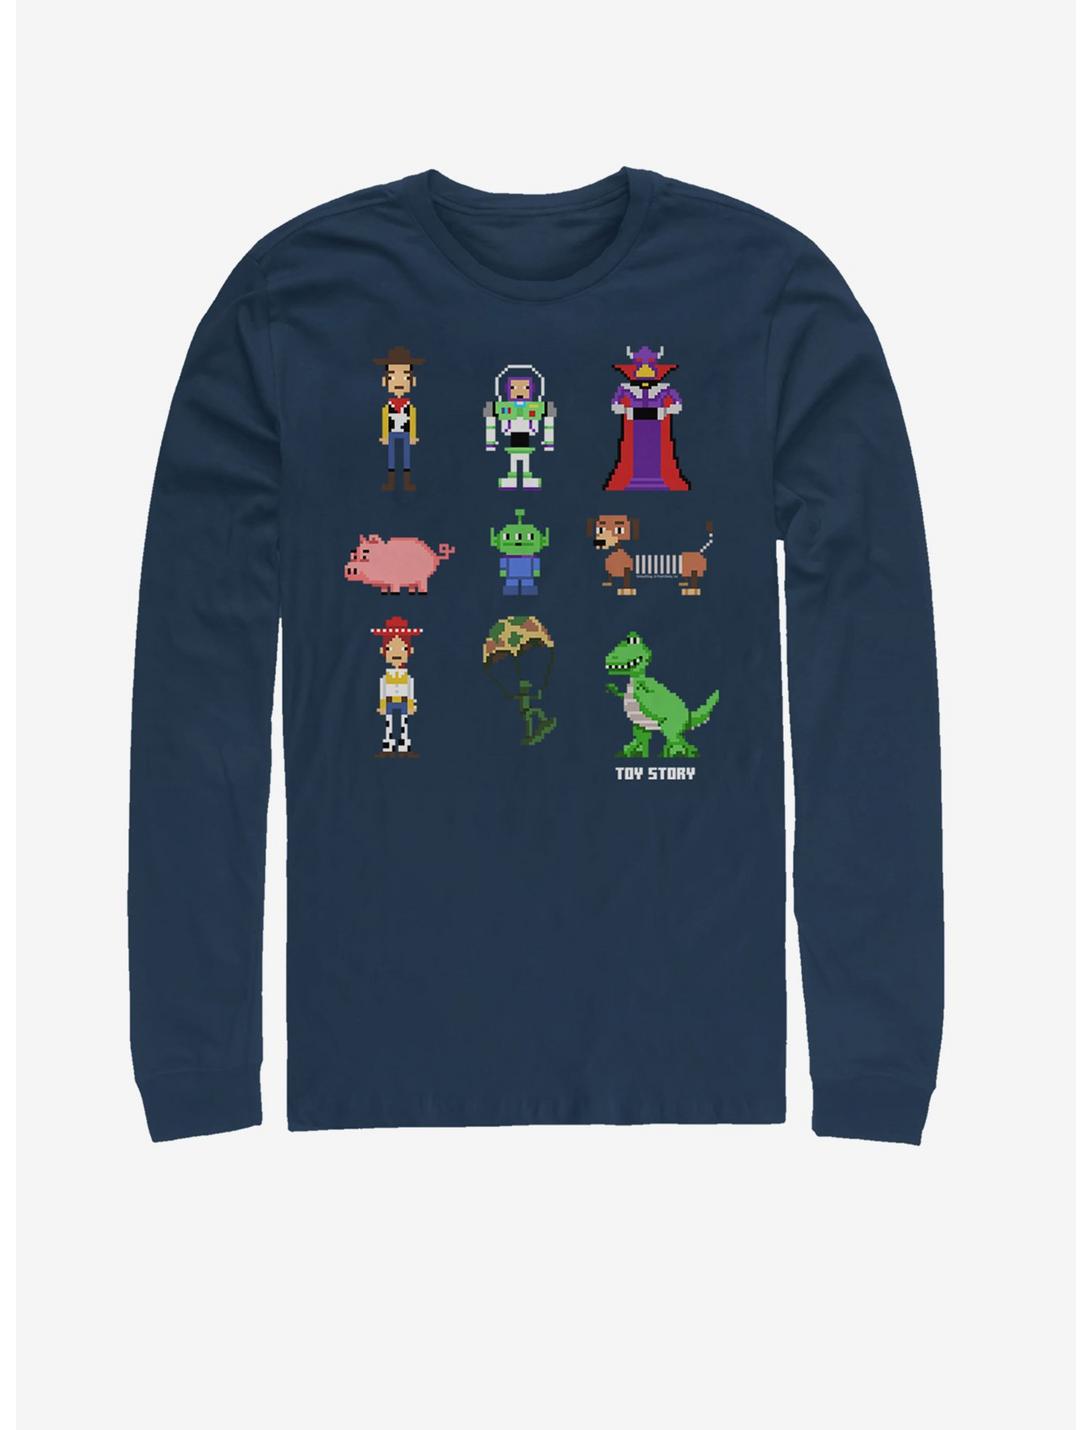 Disney Pixar Toy Story Pixel Story Long-Sleeve T-Shirt, NAVY, hi-res